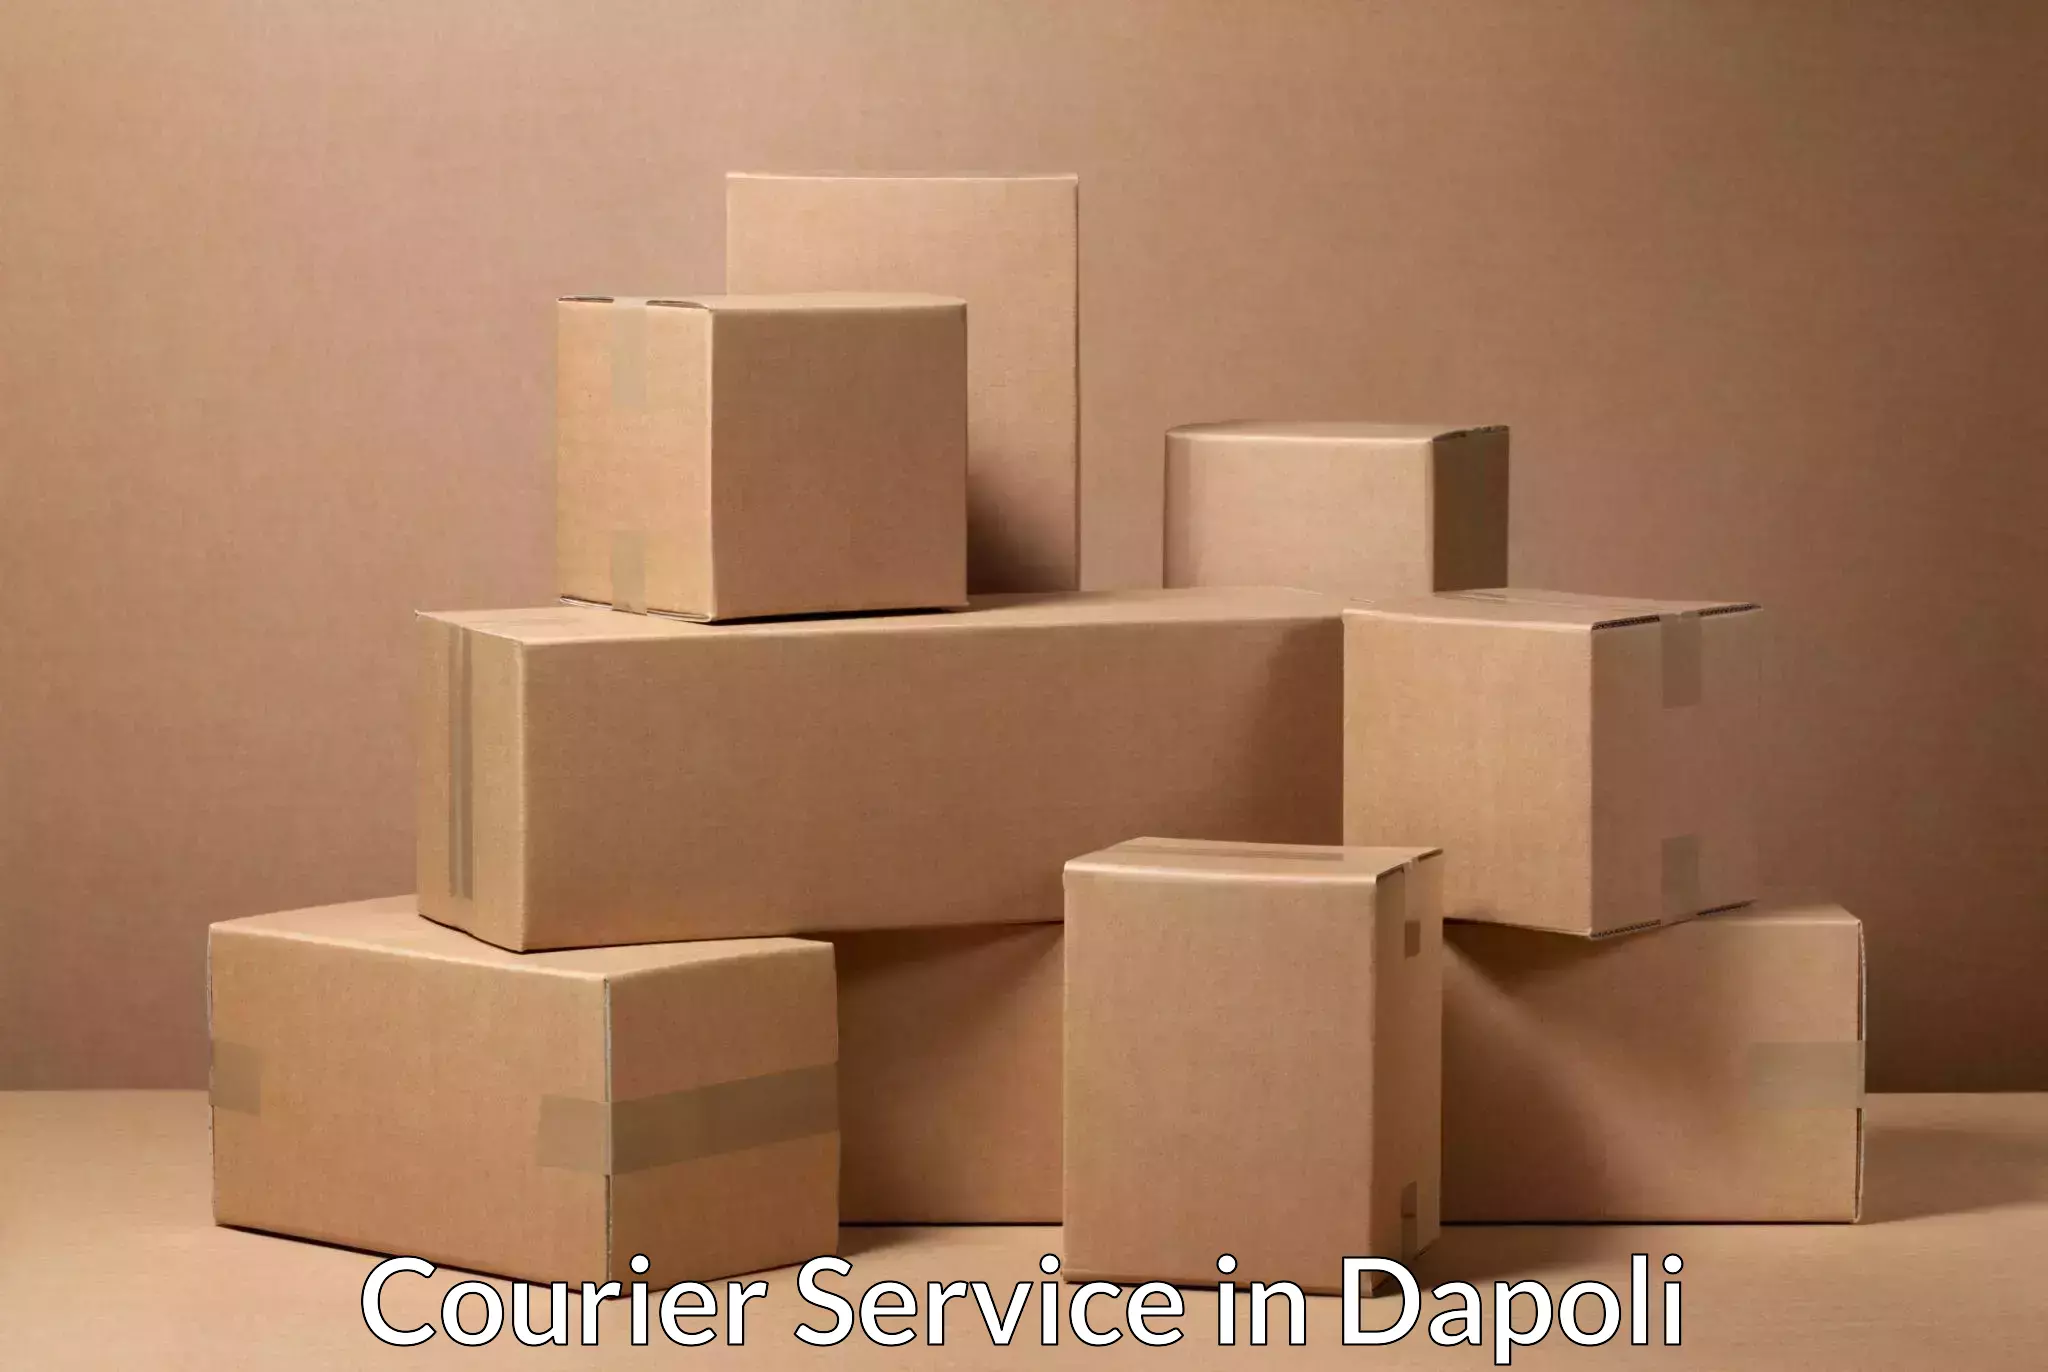 Local delivery service in Dapoli